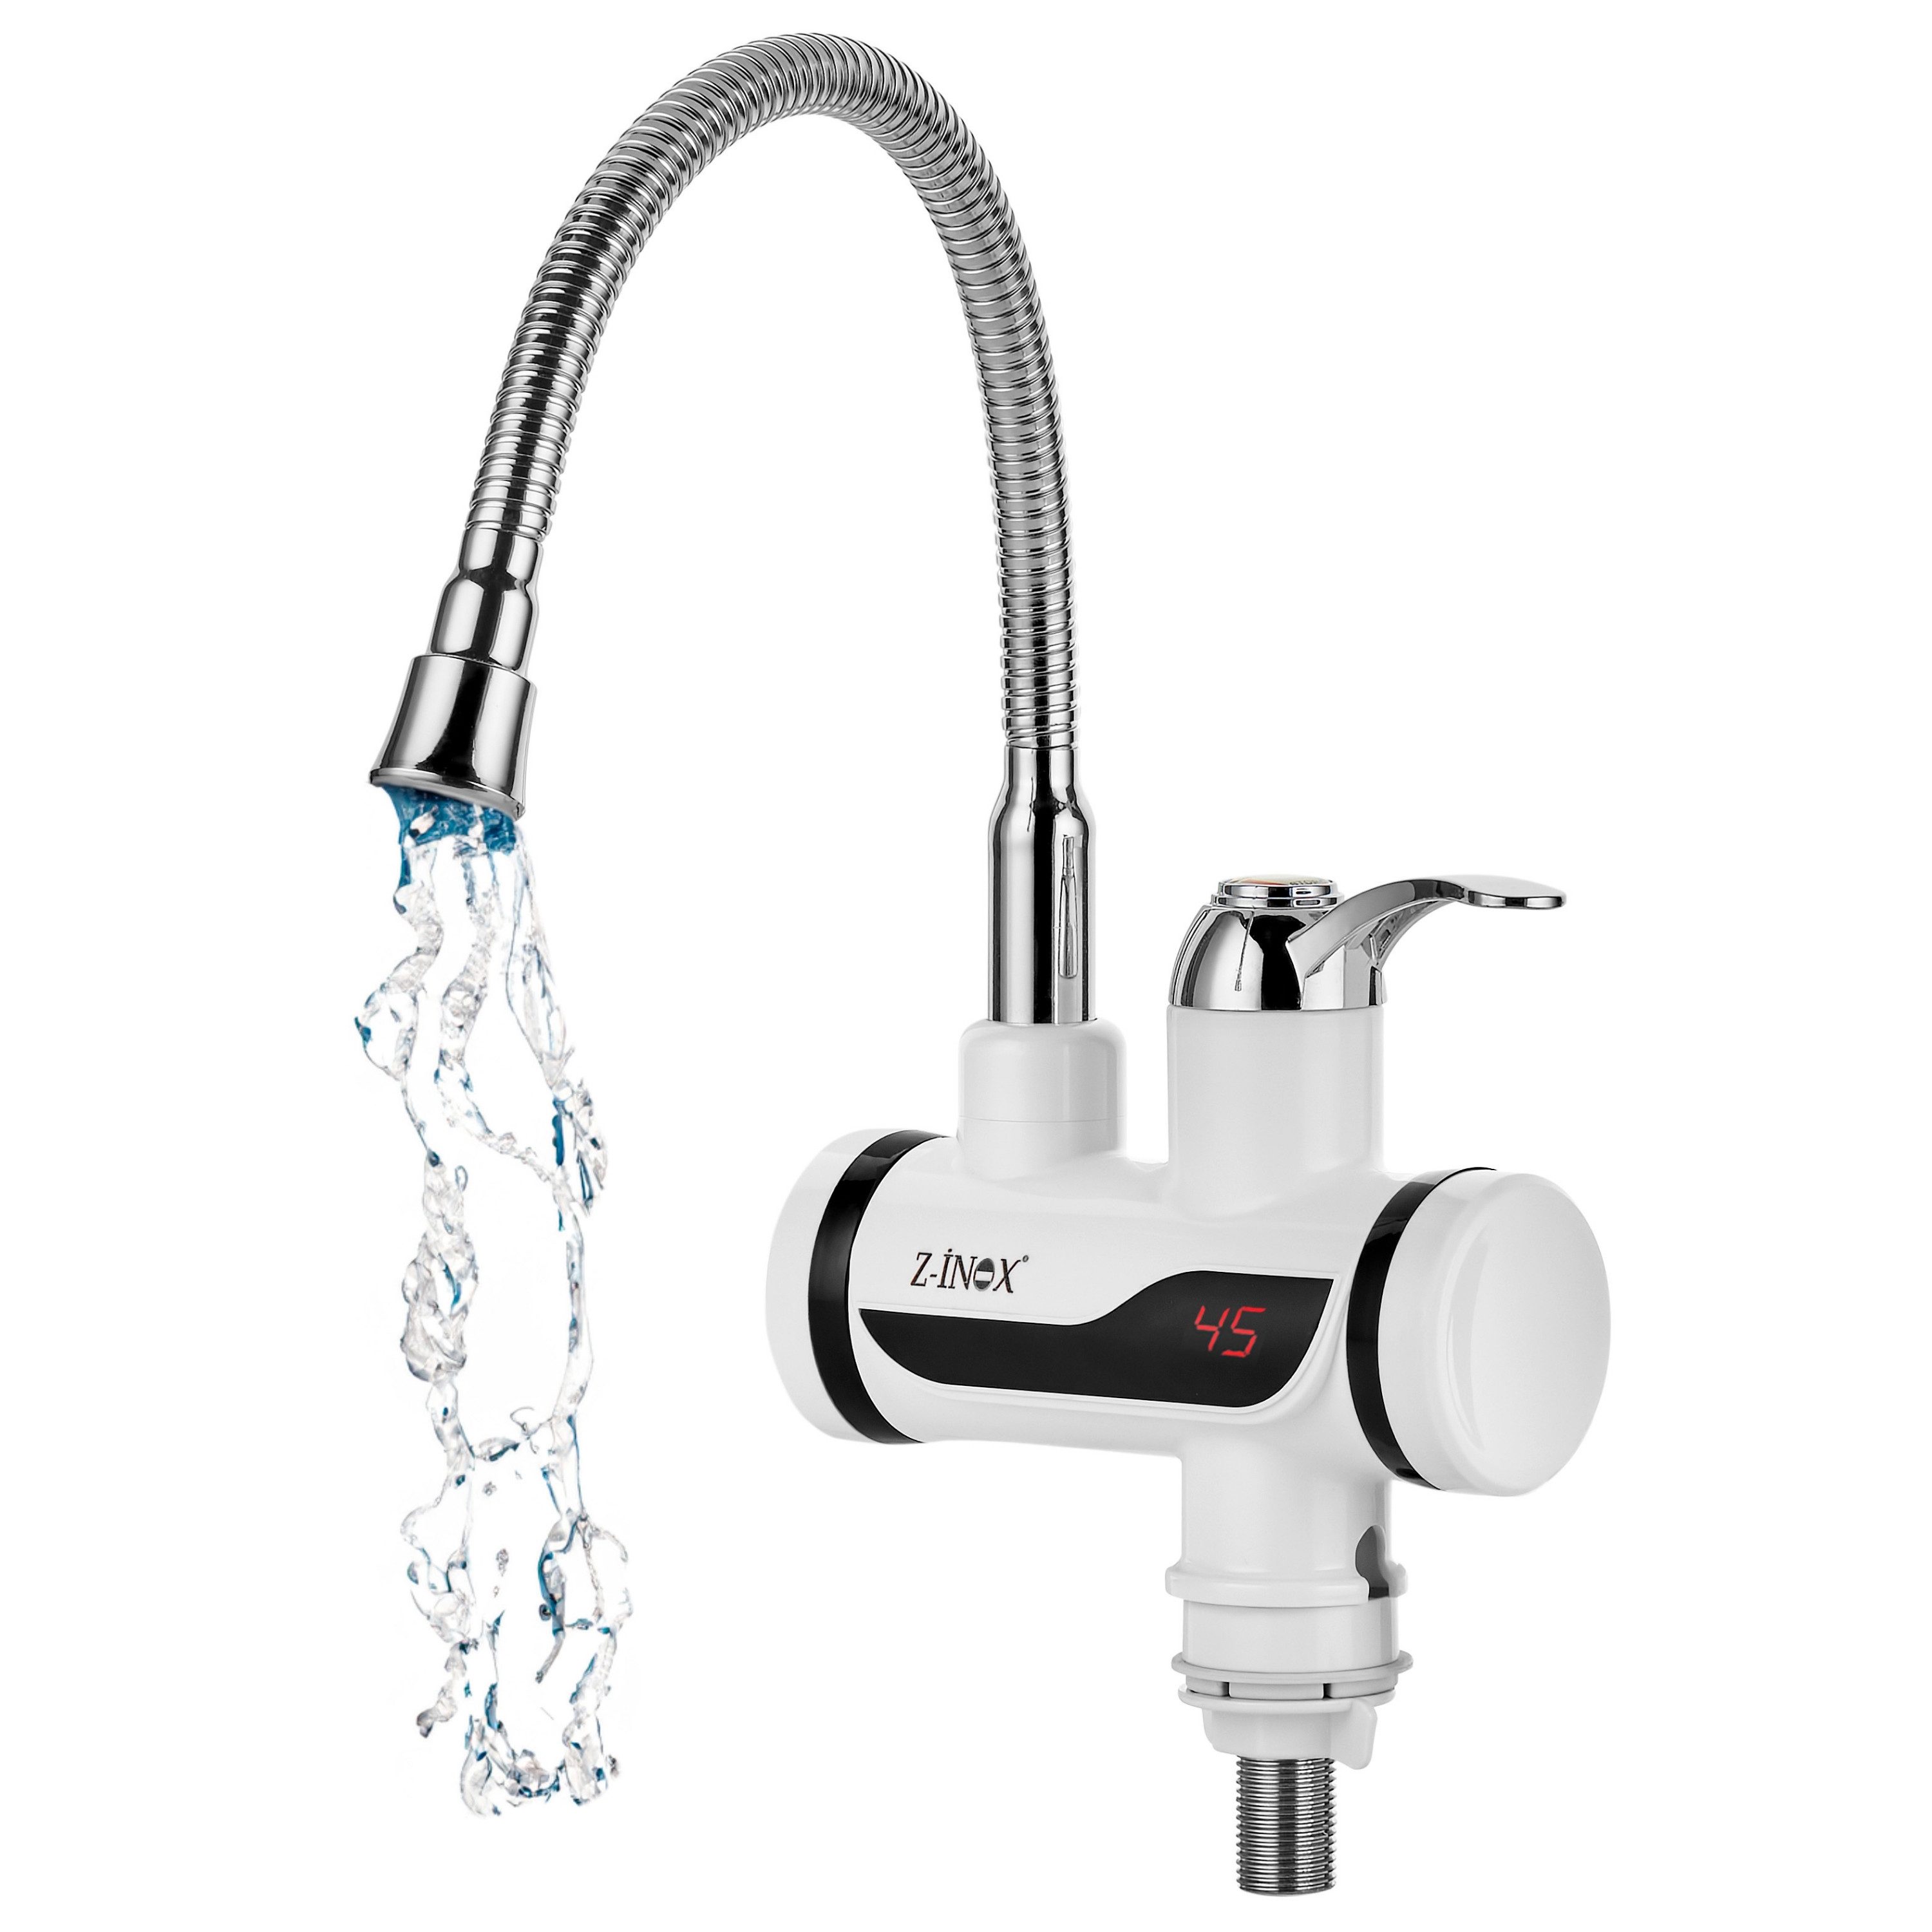 Zilan Elektrischer Wasserhahn ZLN-5480, Niederdruck-Anschluss, 3000 W,Display mit Temperaturanzeige,Überhitzungsschutz